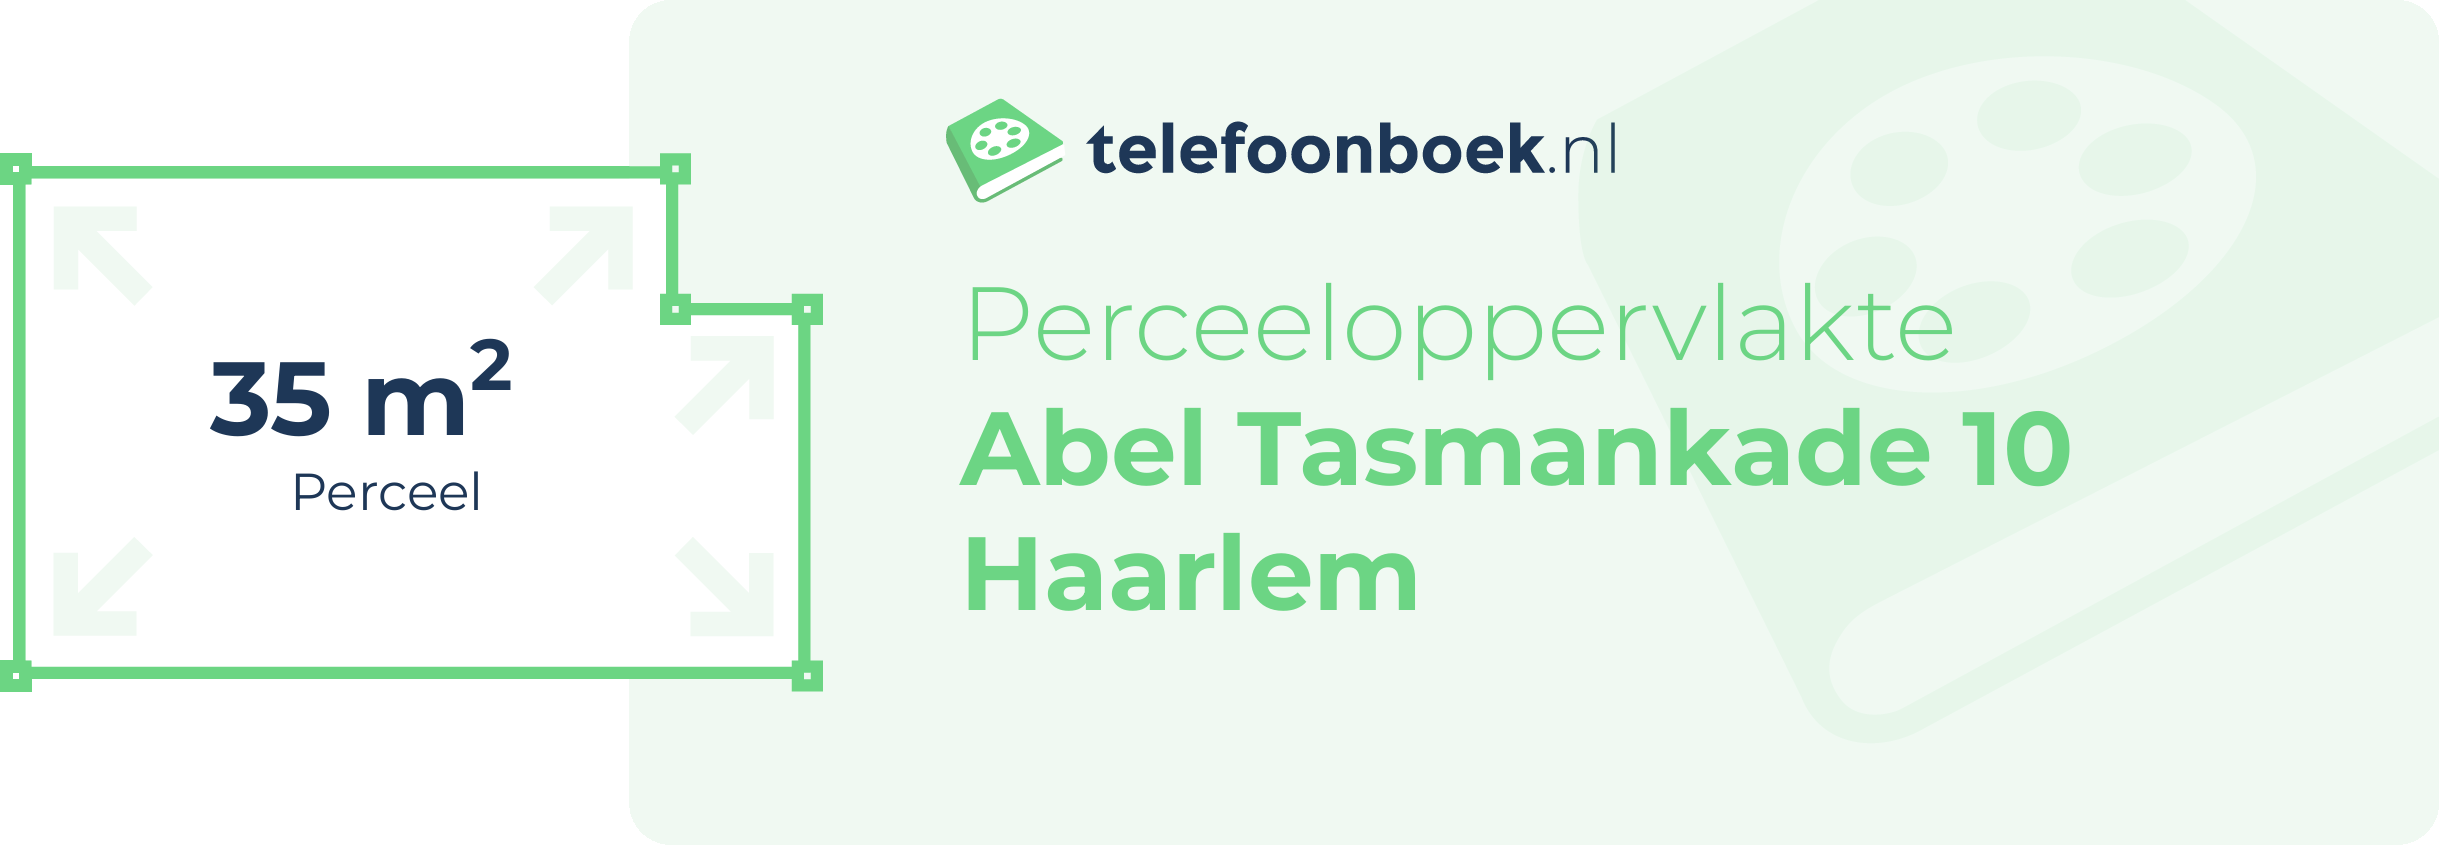 Perceeloppervlakte Abel Tasmankade 10 Haarlem